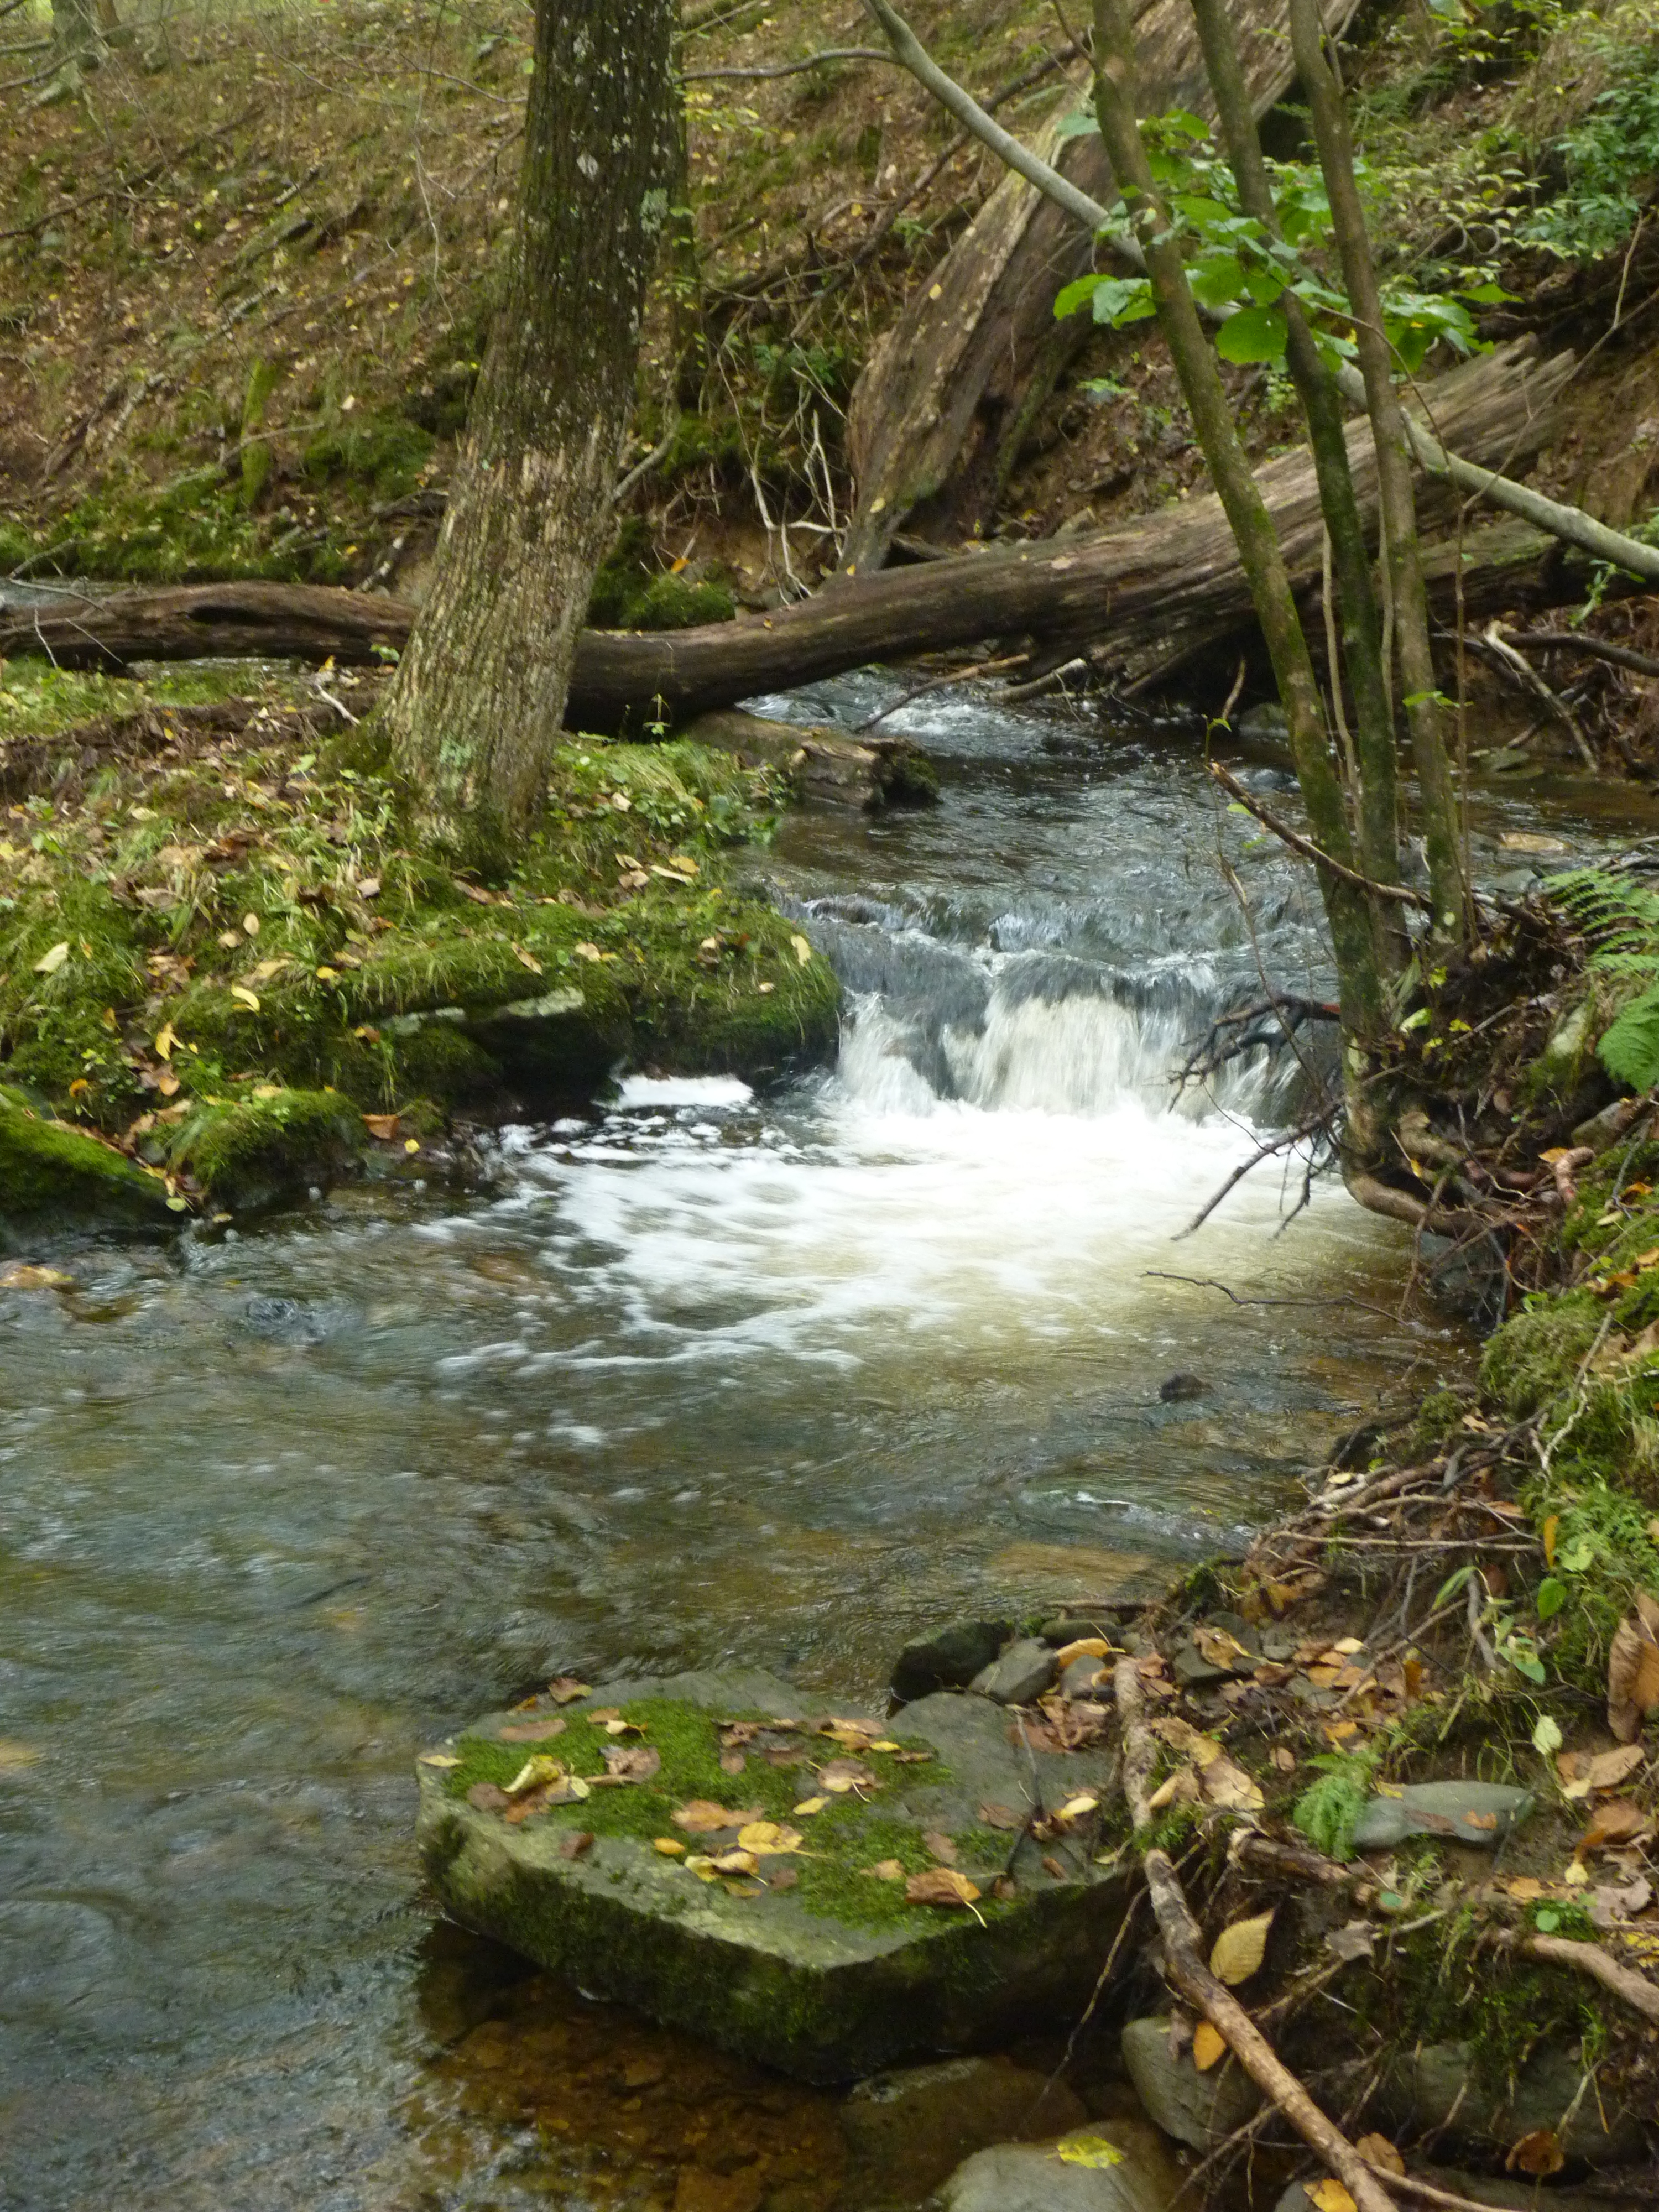 A healthy stream